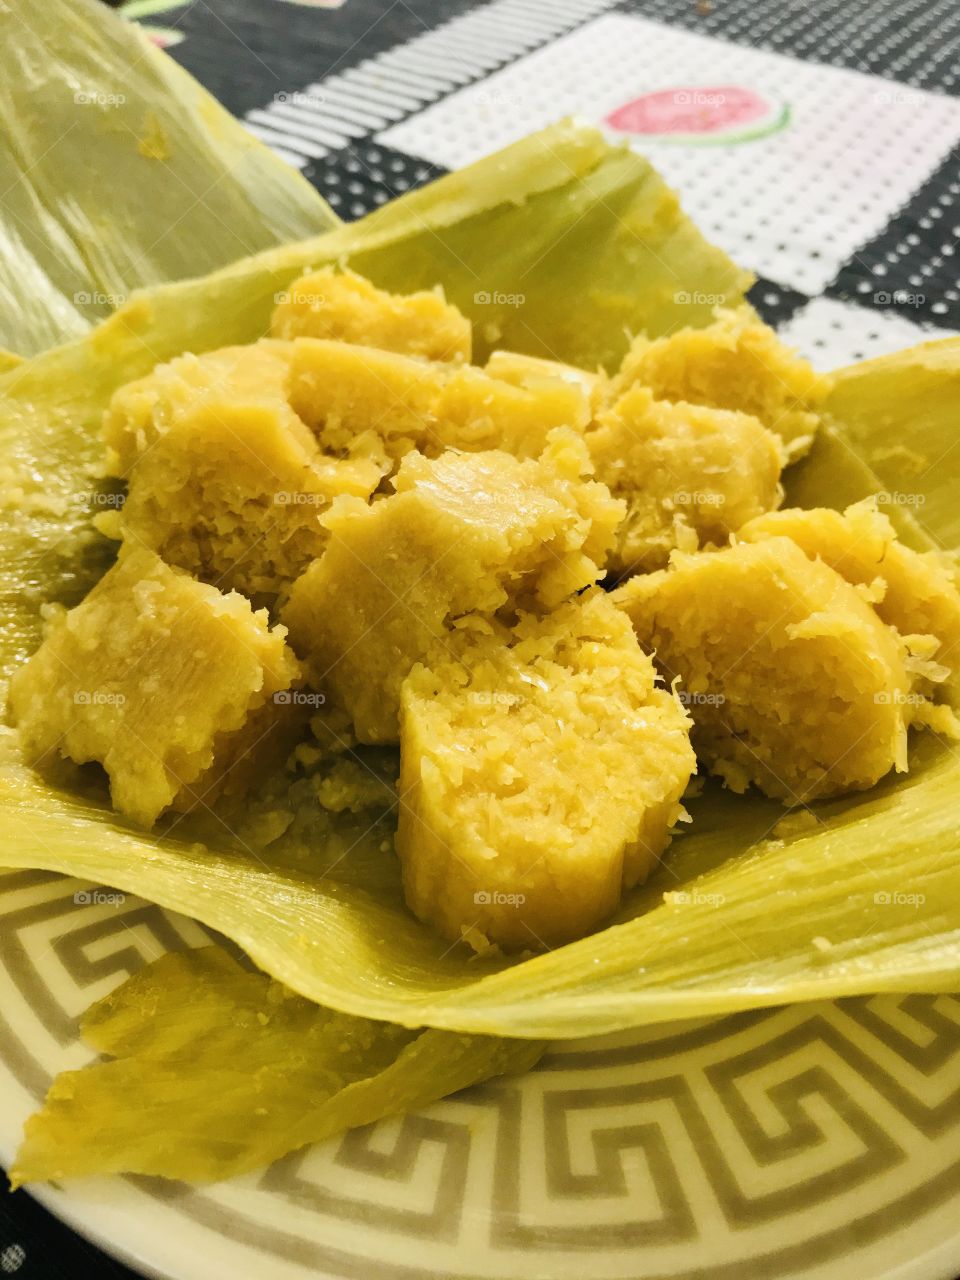 A mais conhecida e deliciosa receita brasileira, a pamonha que é feita do milho verde.